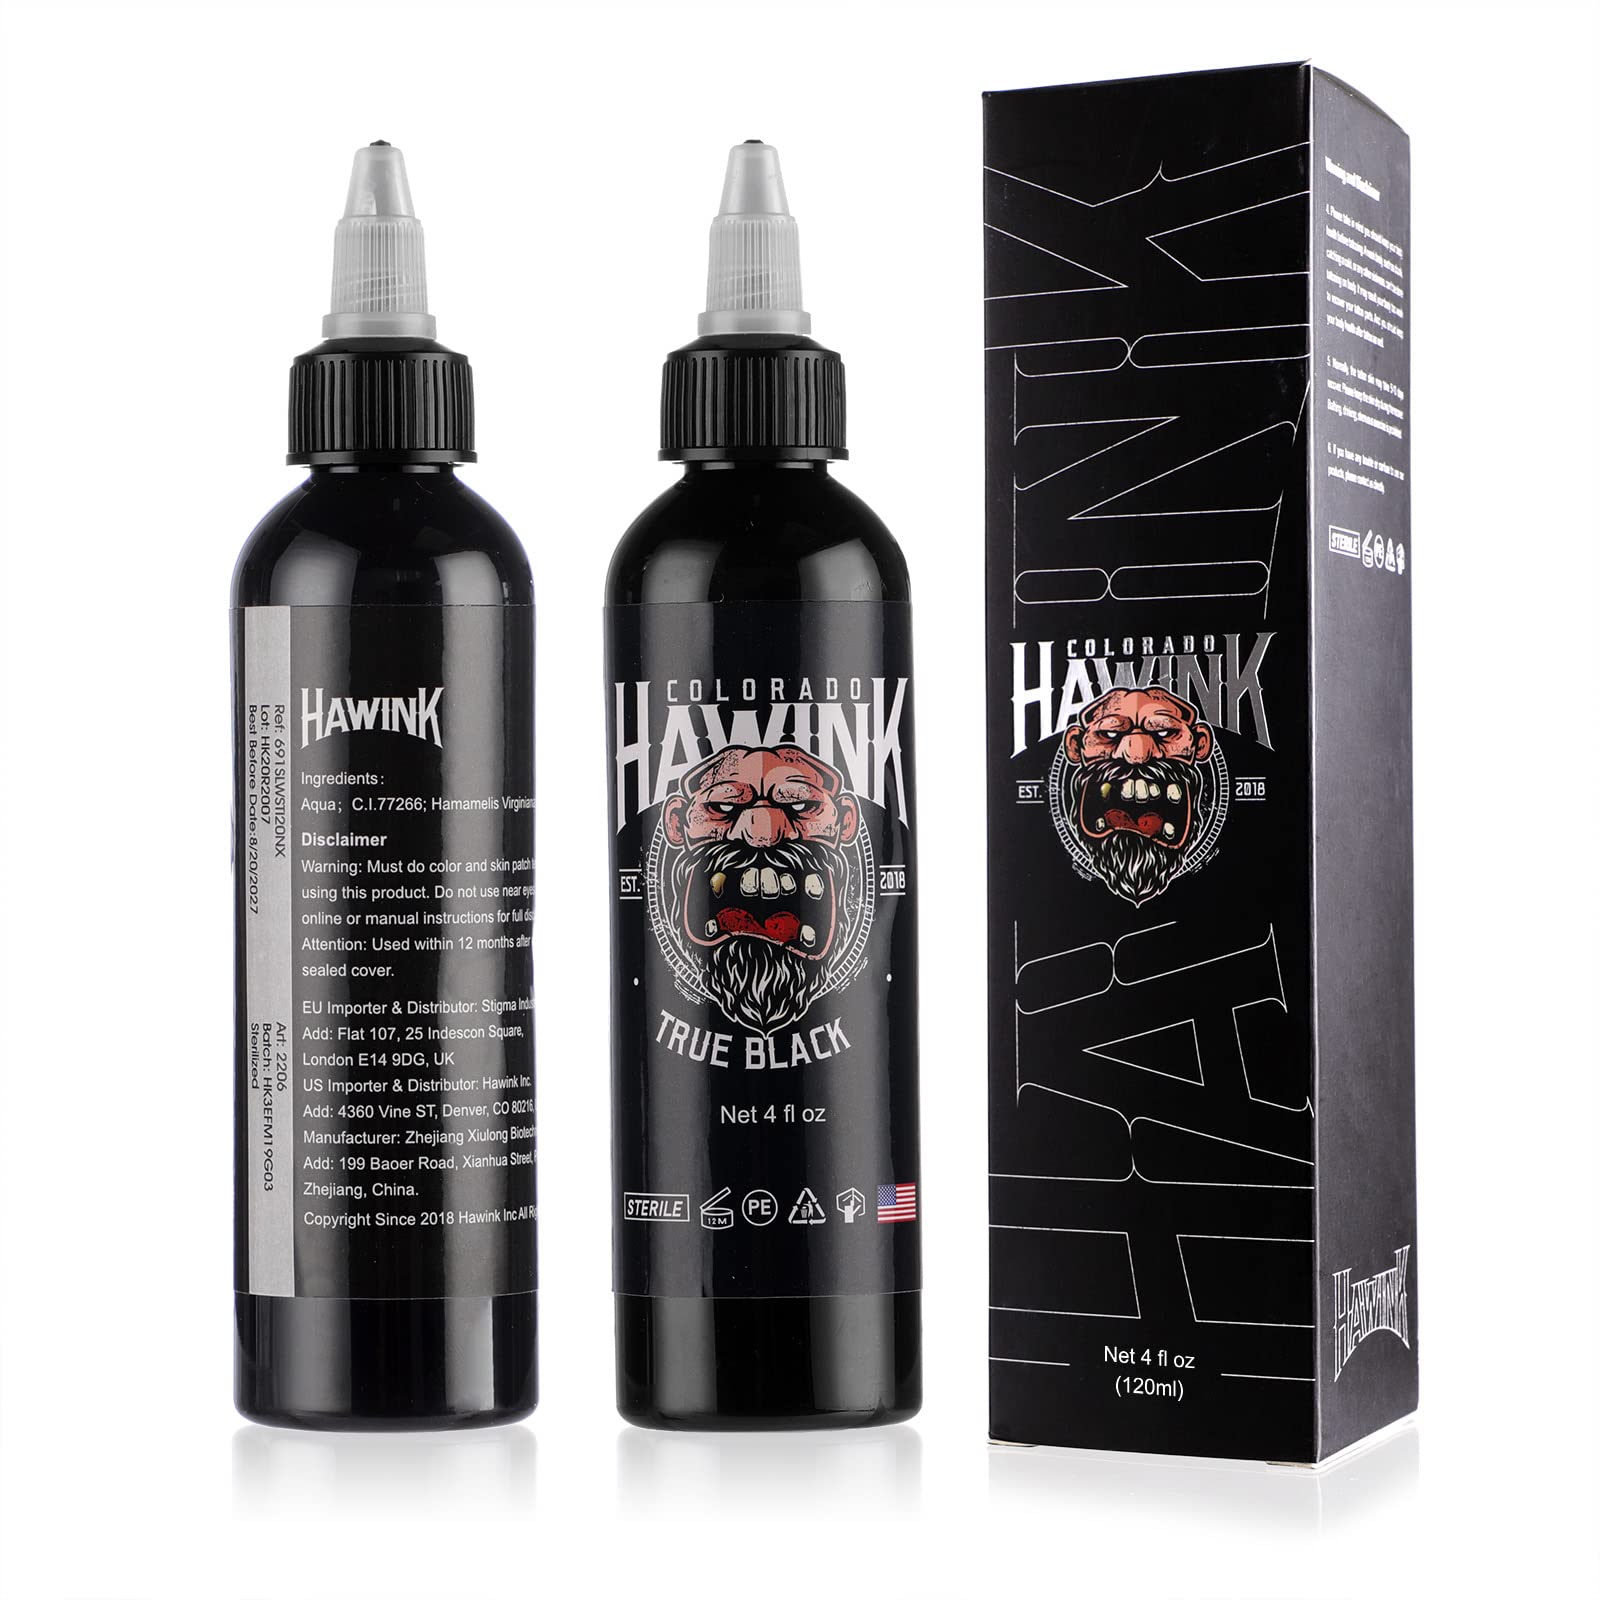 HAWINK Black Tattoo Ink 4oz(120ml) Vegan-Friendly USA Standard Pigment Tattoo Supplies Super Black TI203-120-002